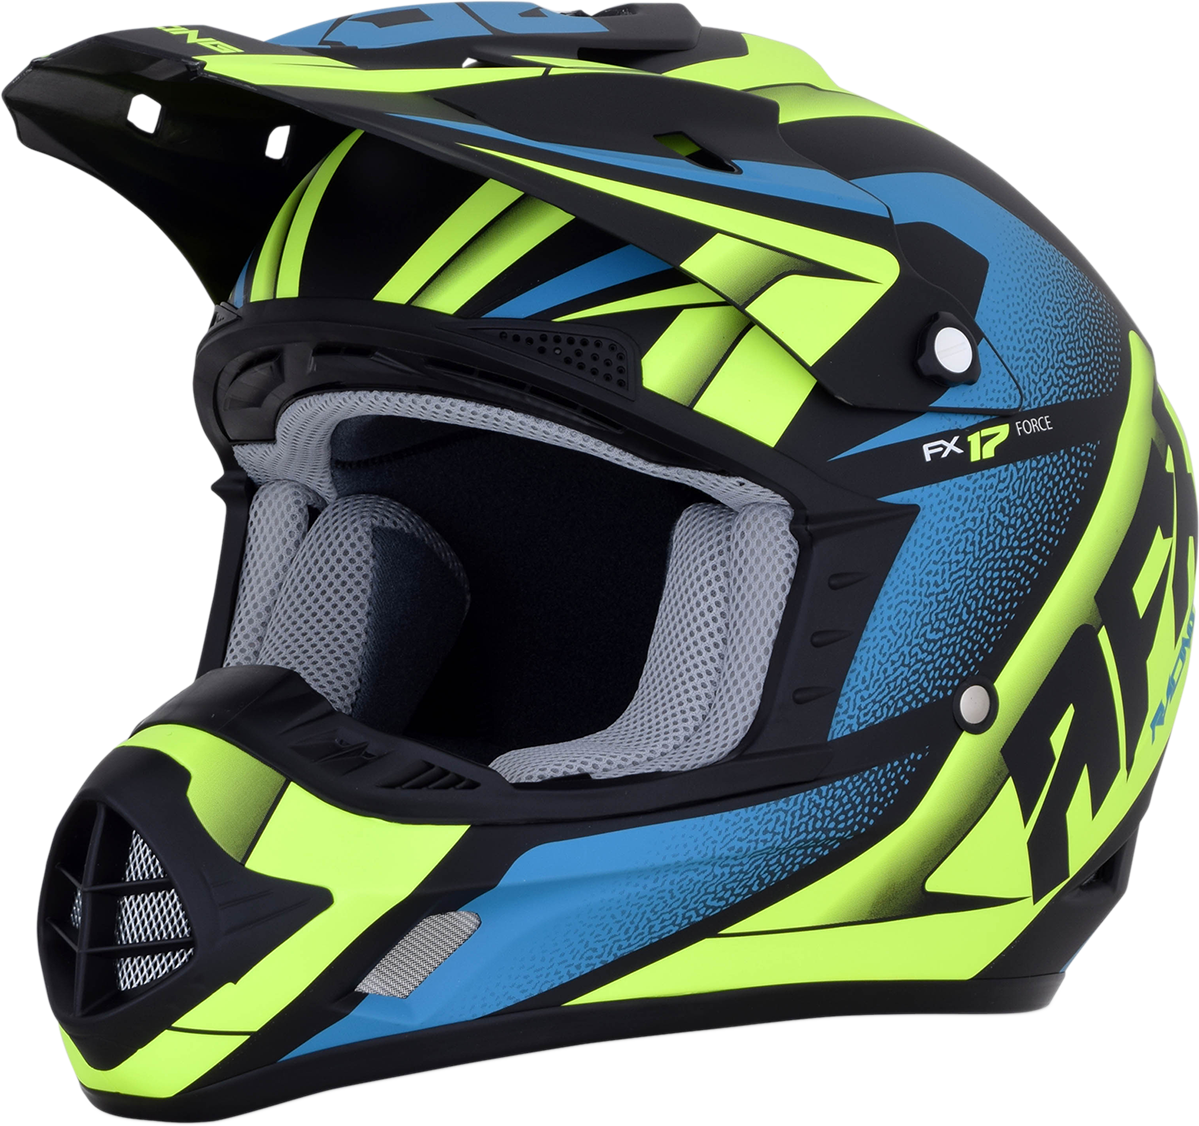 AFX FX-17 Helmet - Force - Matte Black/Green/Blue - XL 0110-5217